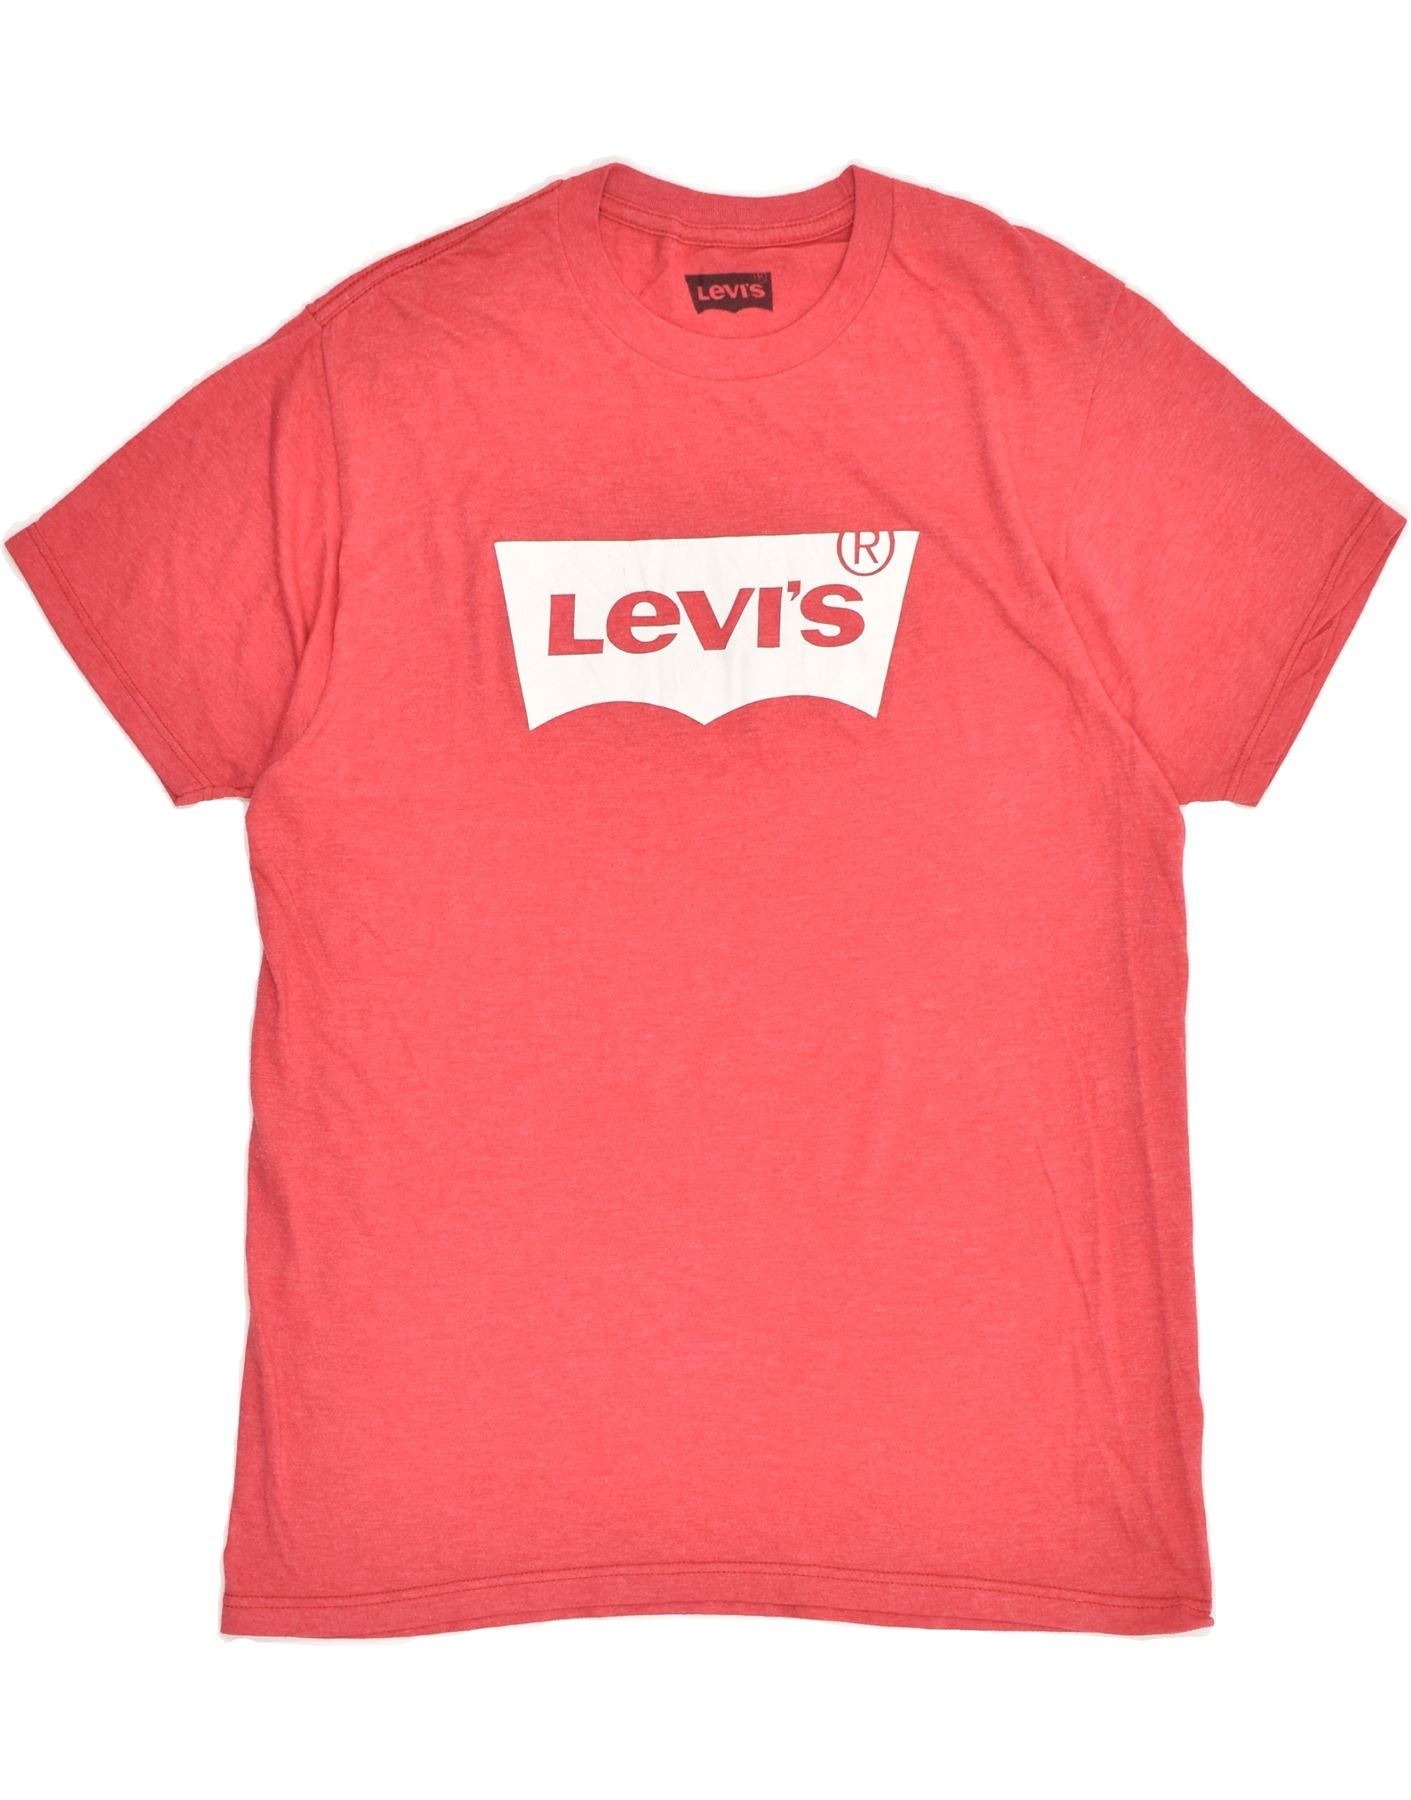 Мужская футболка с рисунком LEVI'S, хлопковый топ среднего